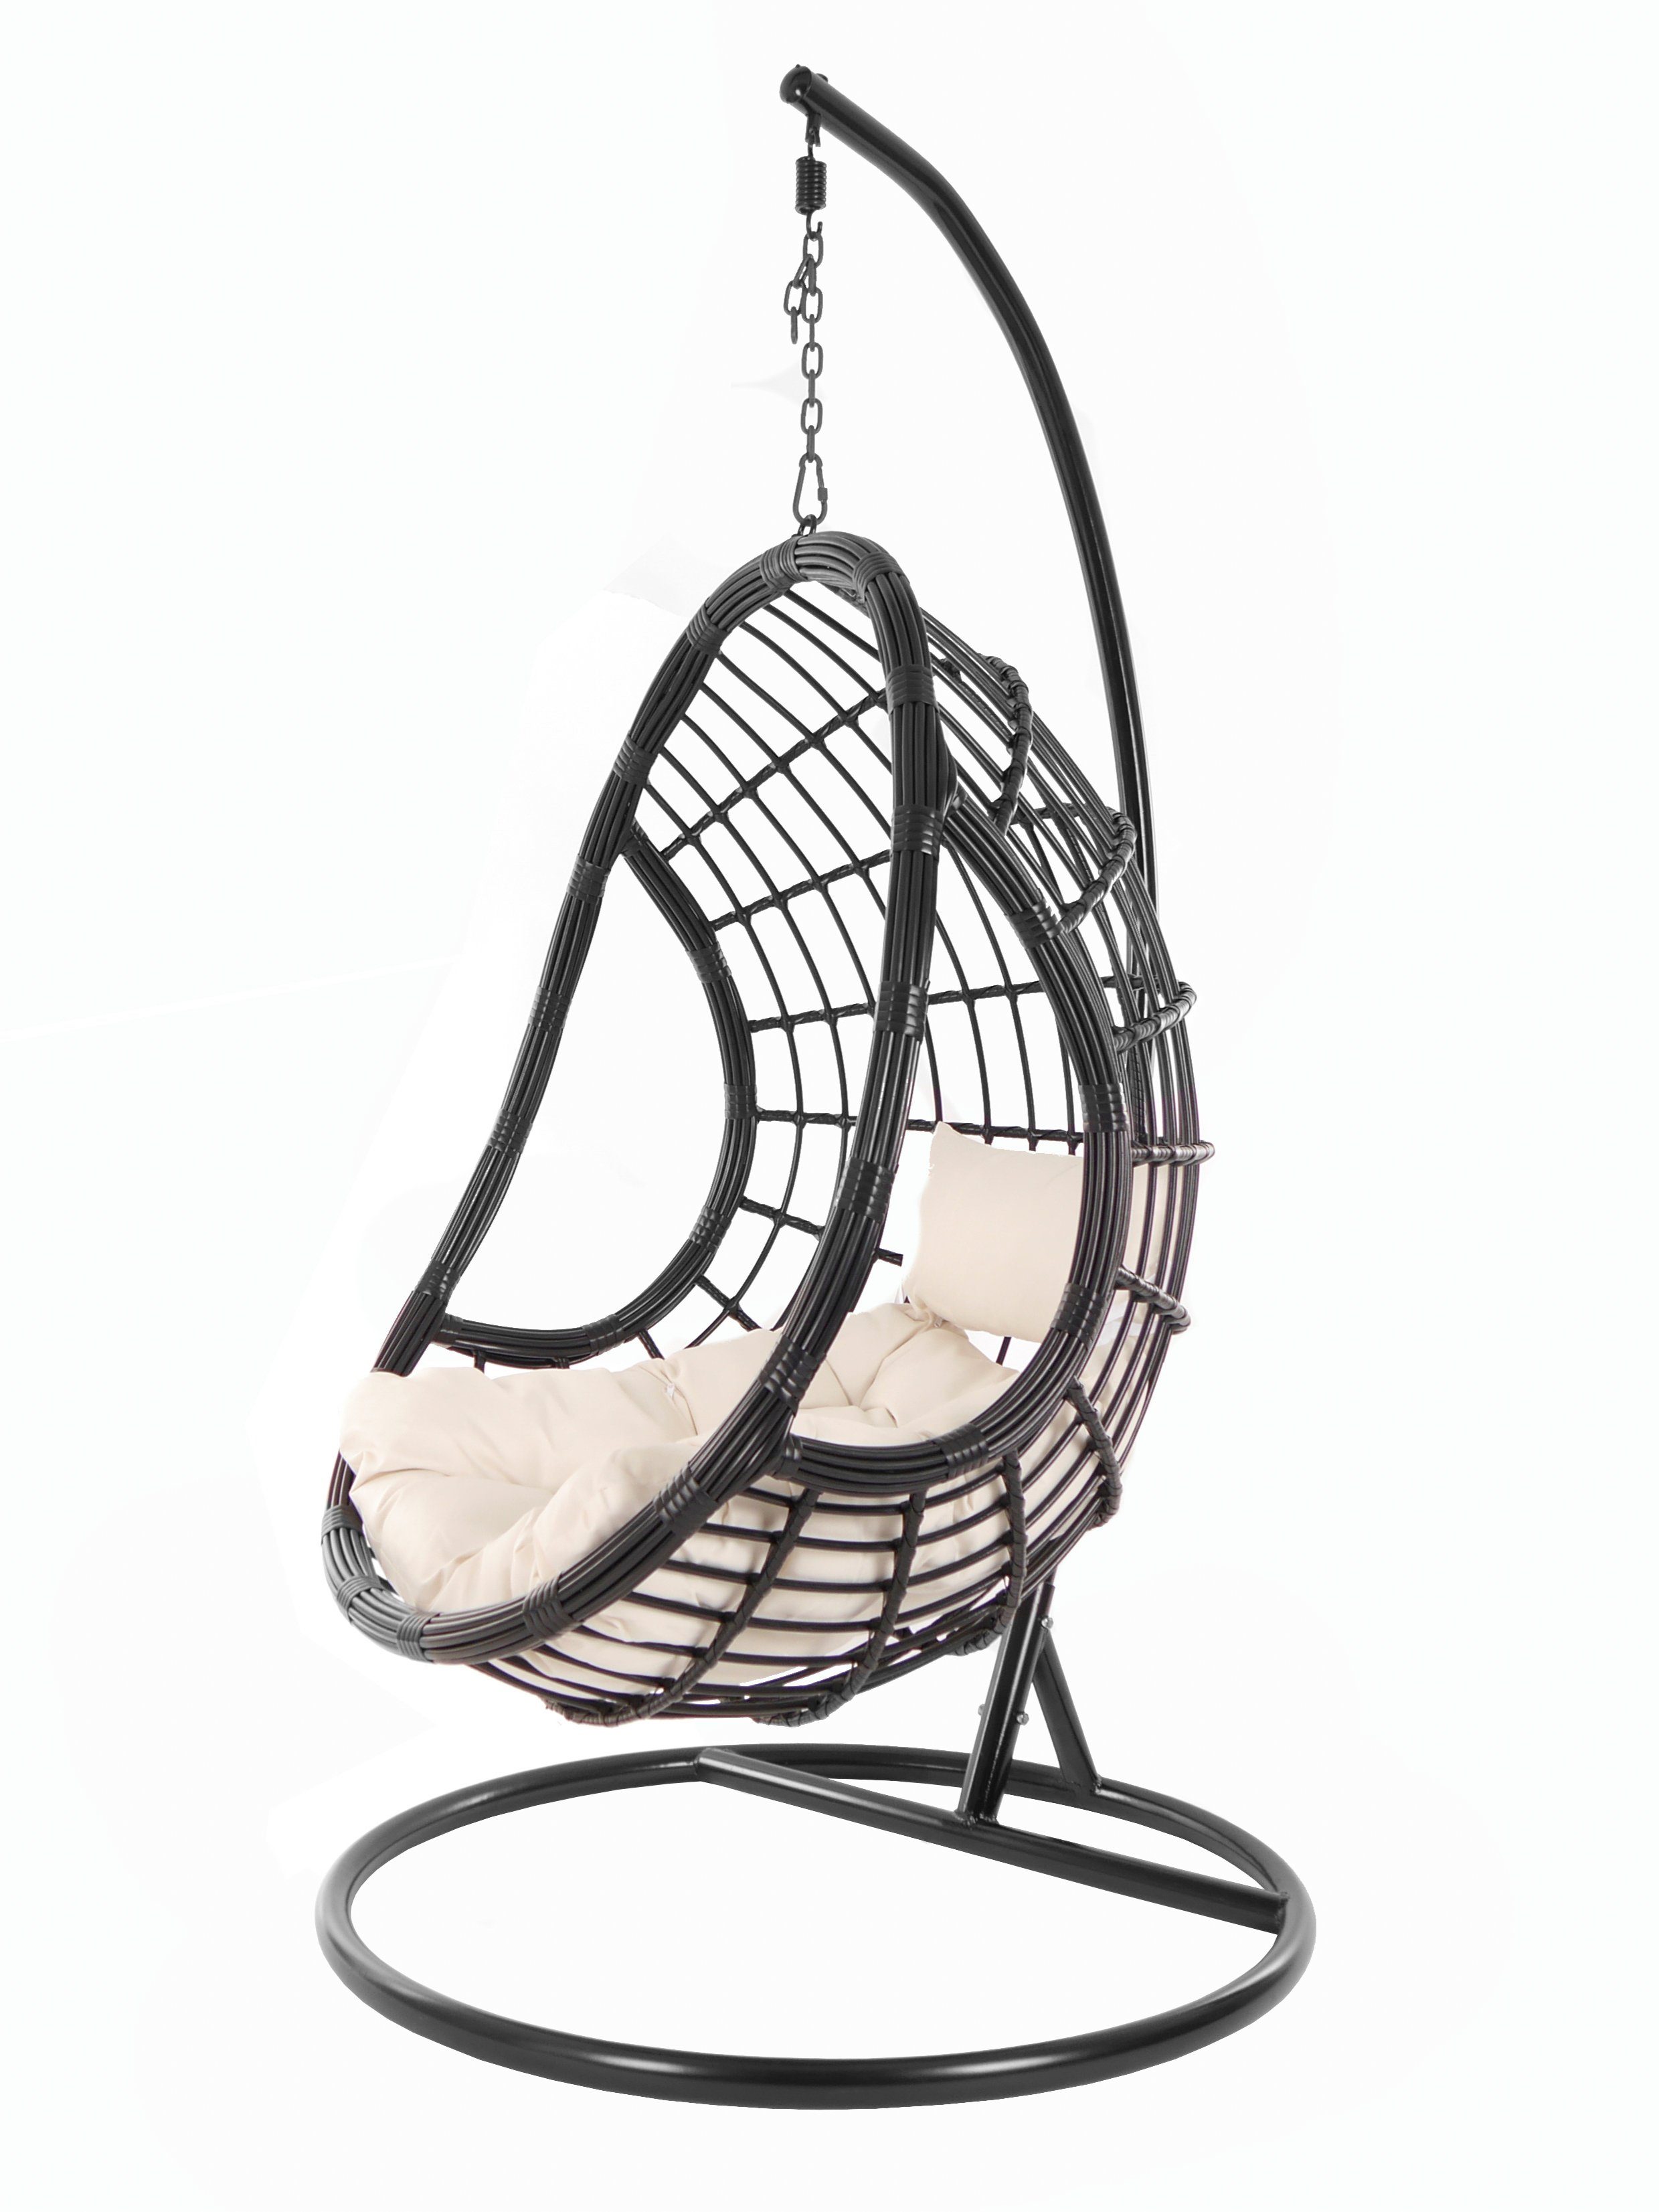 KIDEO Hängesessel PALMANOVA black, Swing Chair, schwarz, Loungemöbel, Hängesessel mit Gestell und Kissen, Schwebesessel, edles Design elfenbein (0050 ivory)